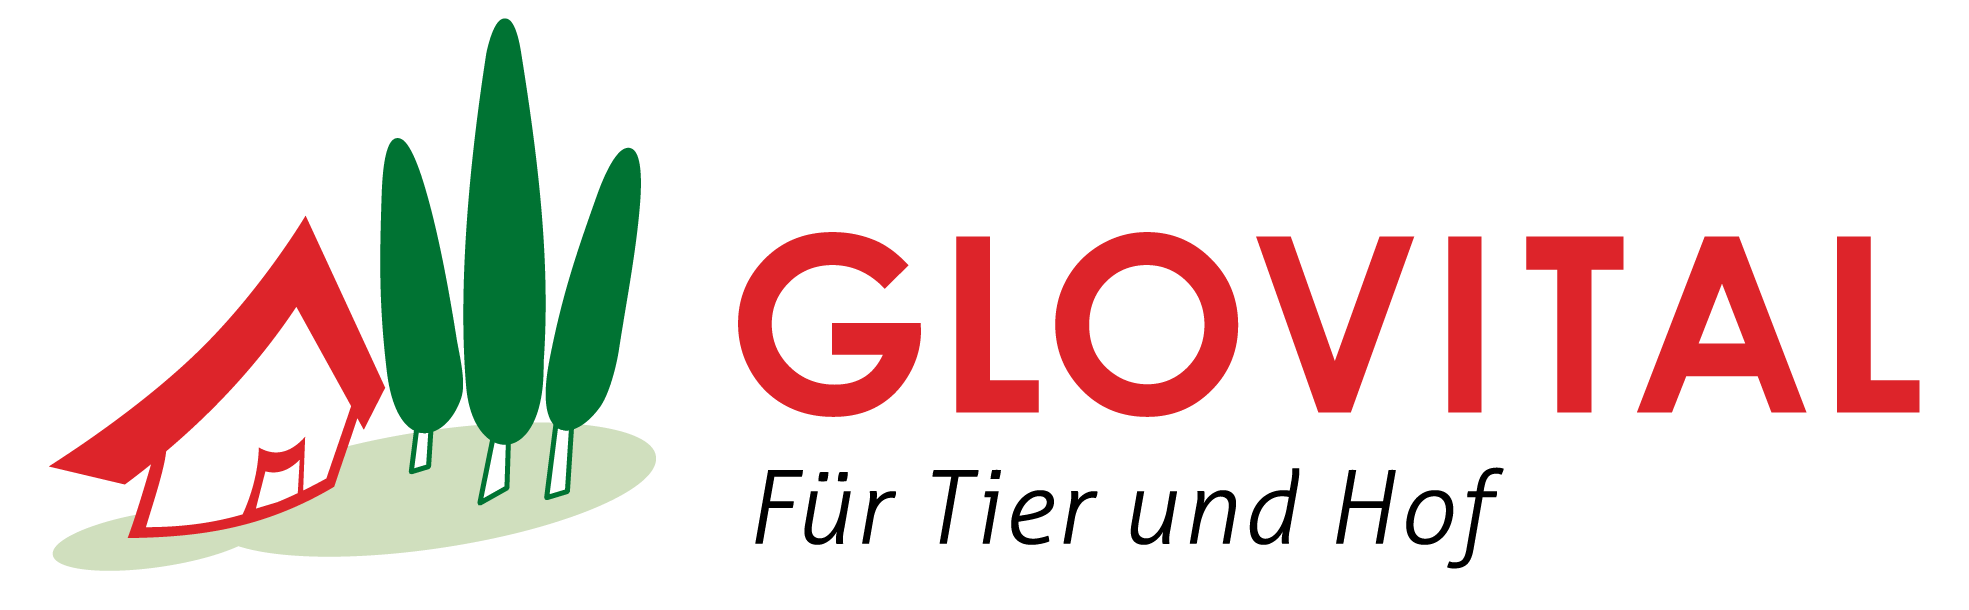 Glovital Logo - Tierhaltung